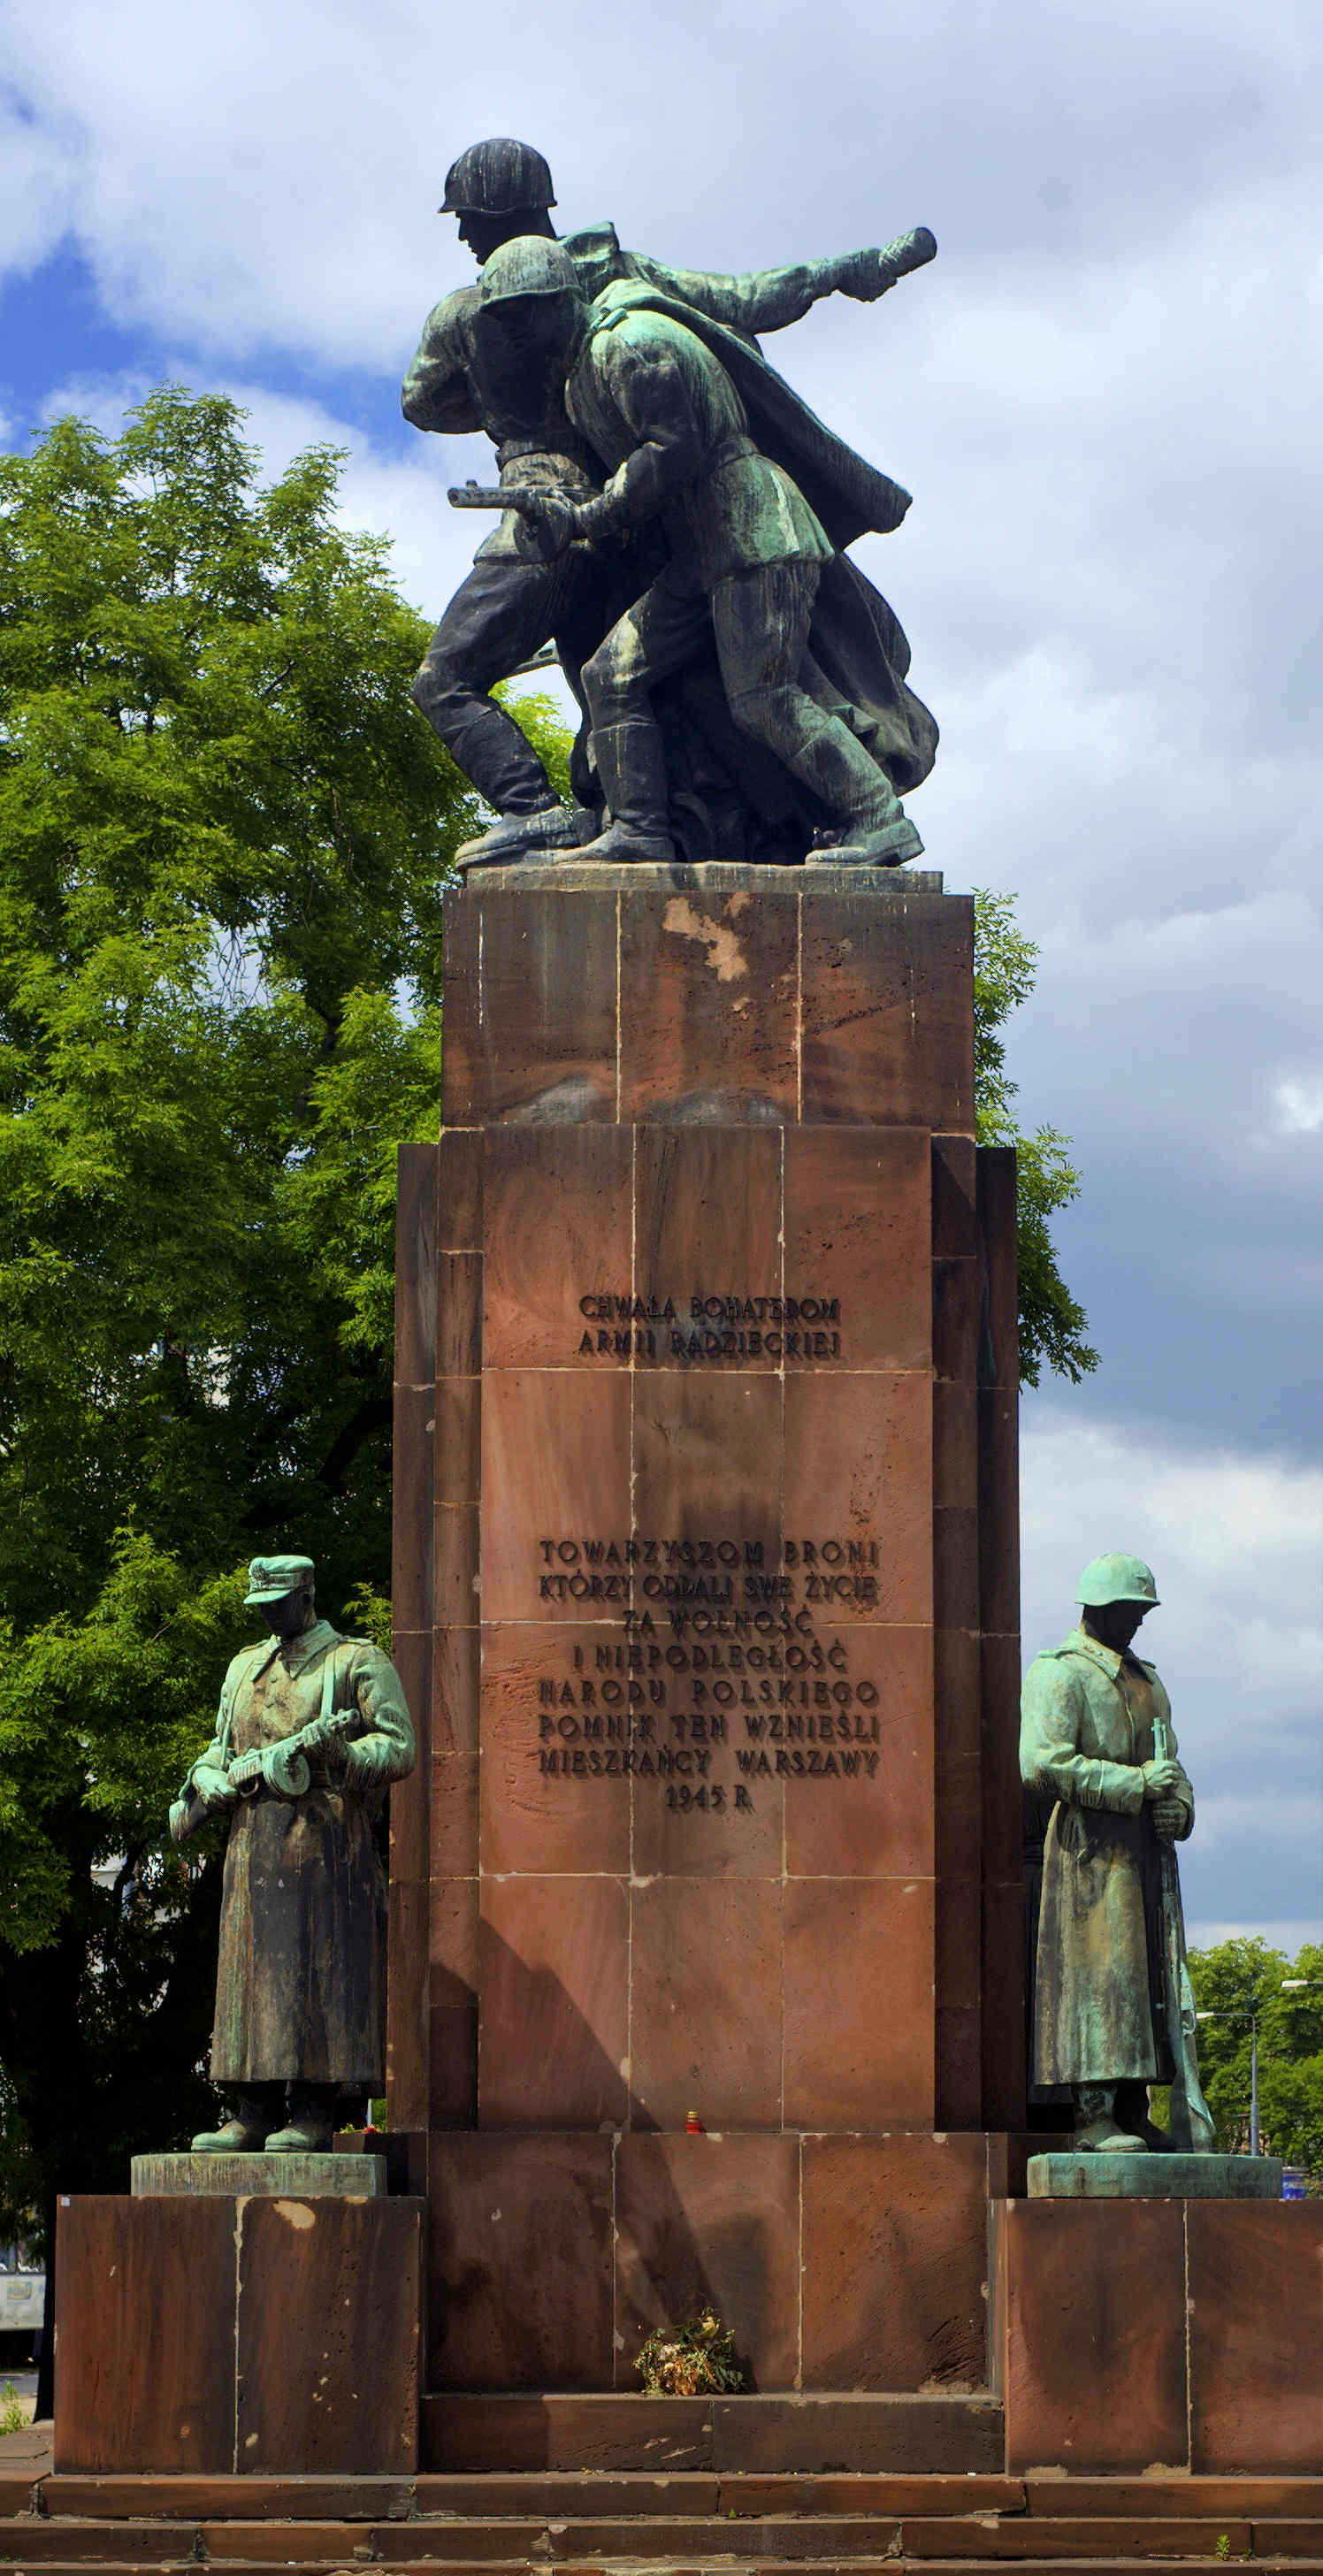 6. Monumento alla fratellanza d’armi sovietico-polacca, Varsavia.